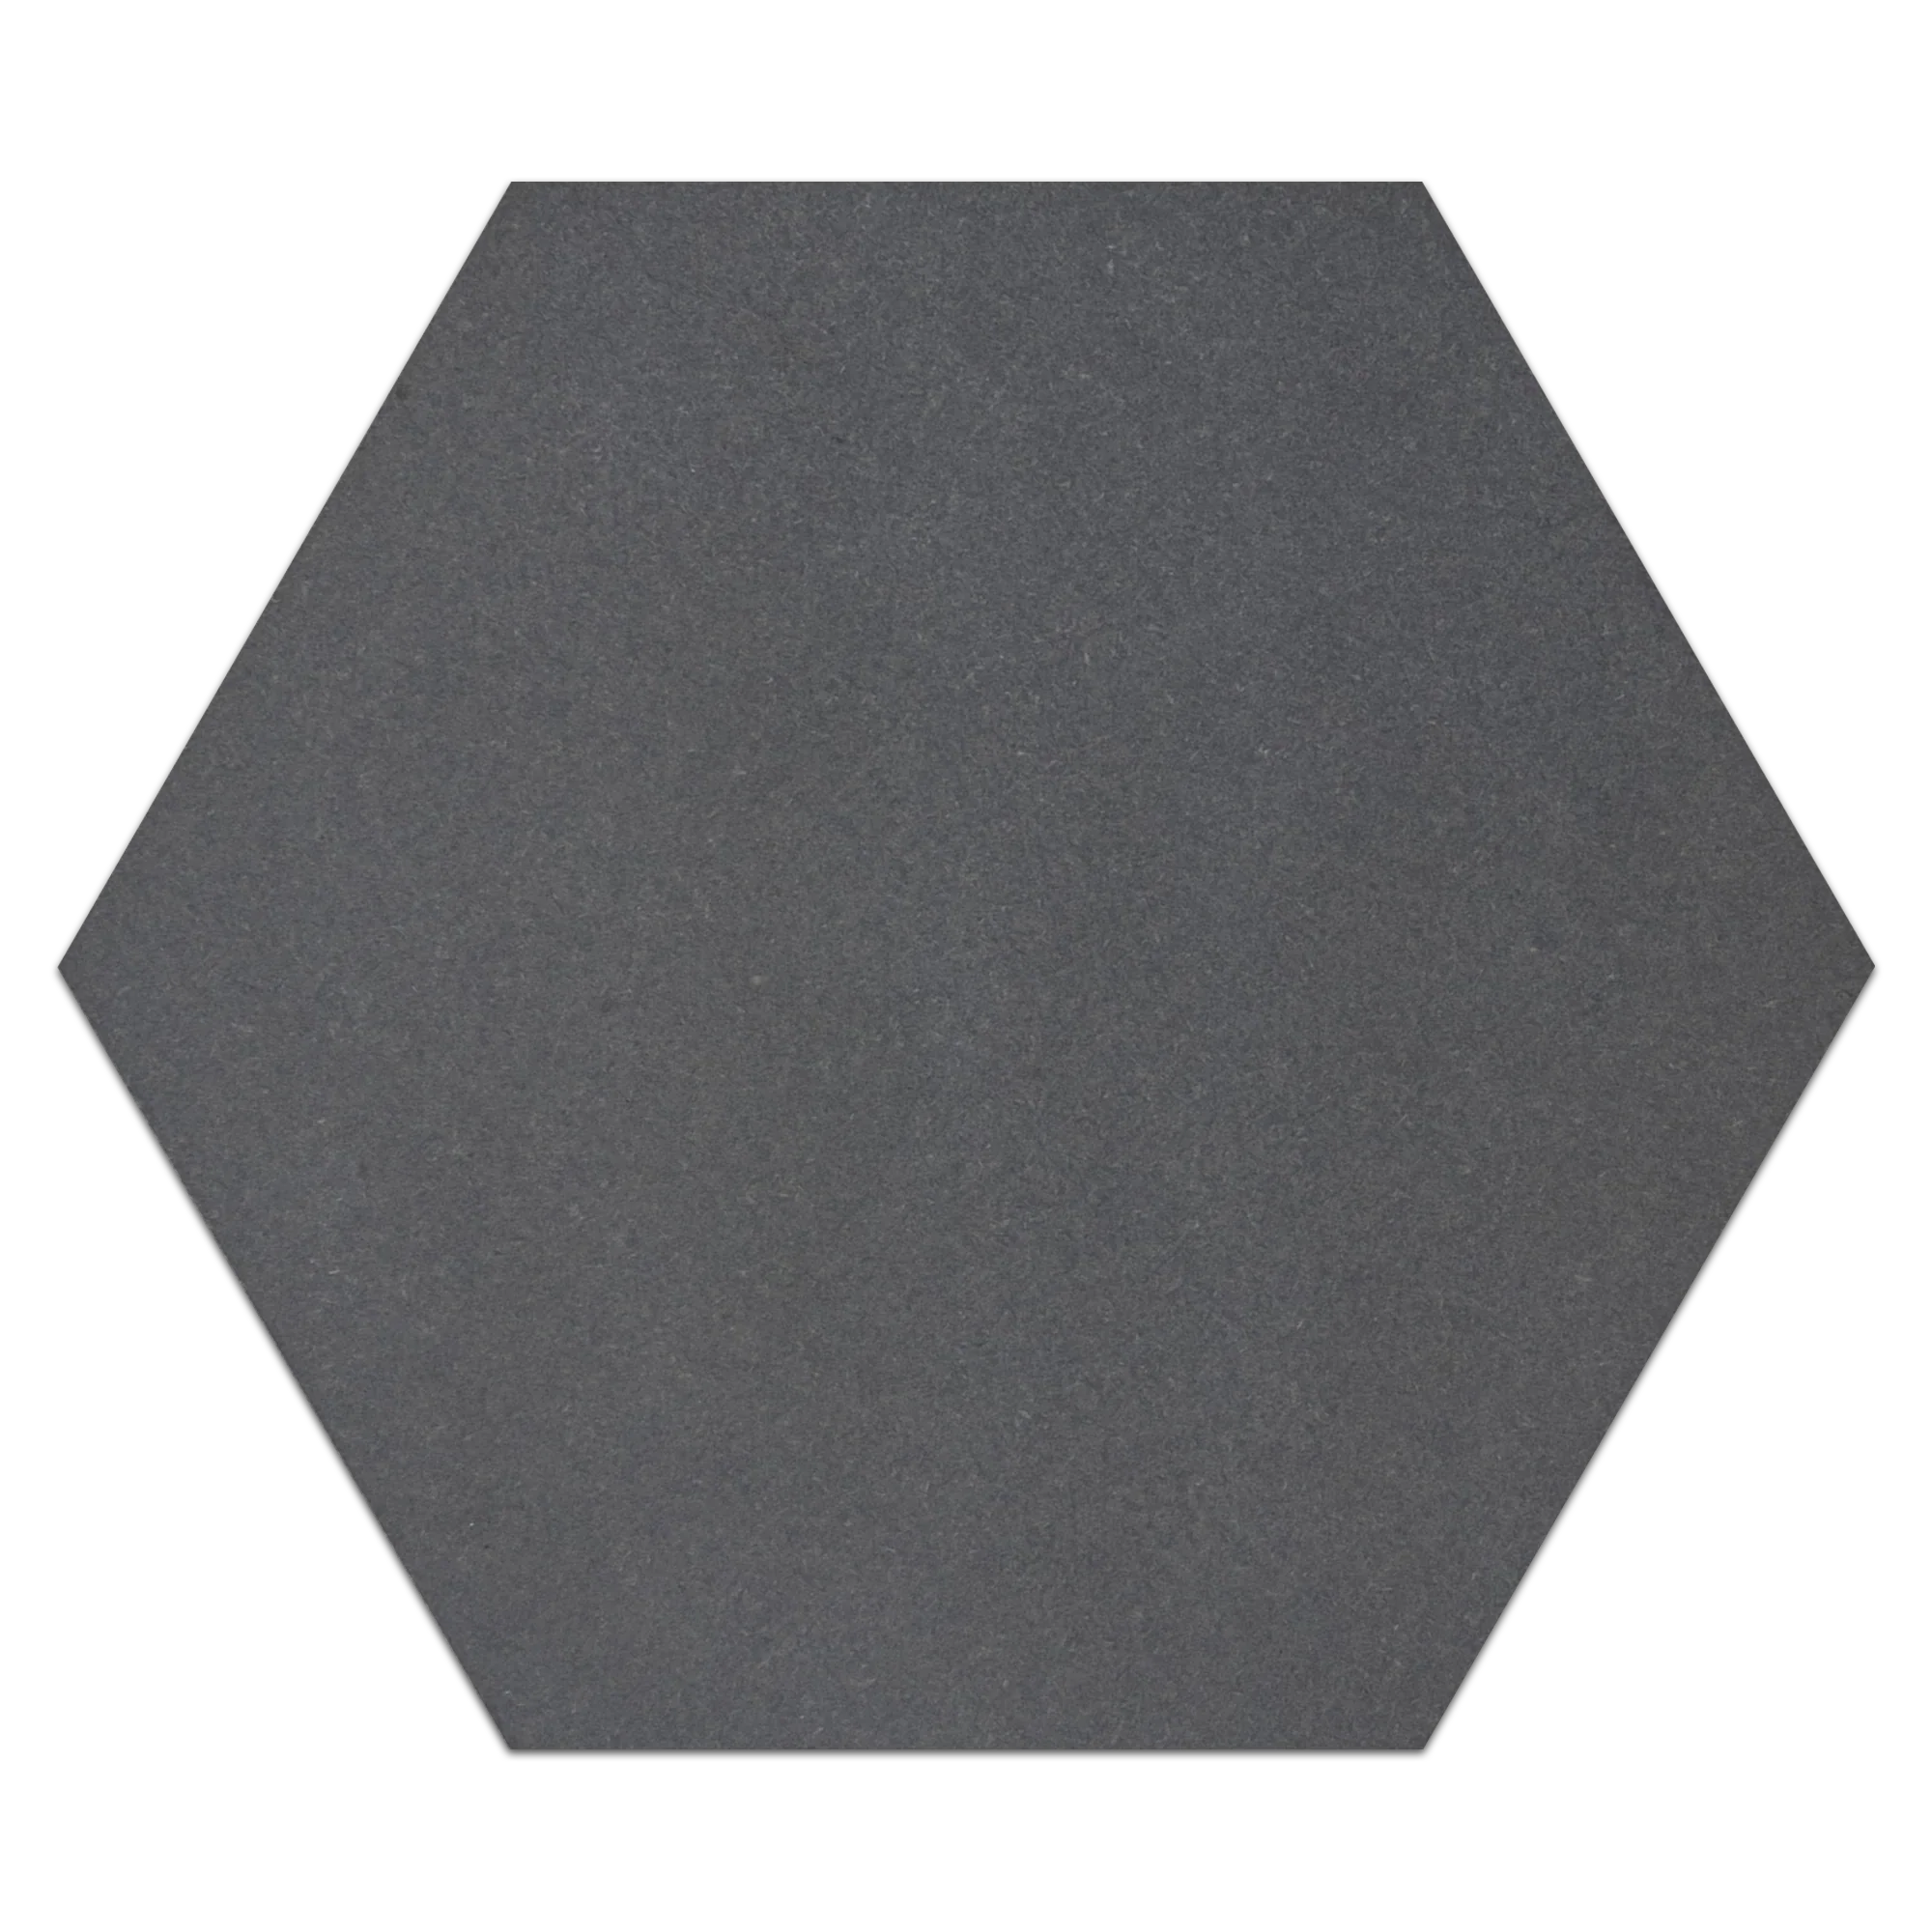 Elon grey basalt hexagon field tile 10.5x12.125x0.375 honed VT1050H - Surface Group International